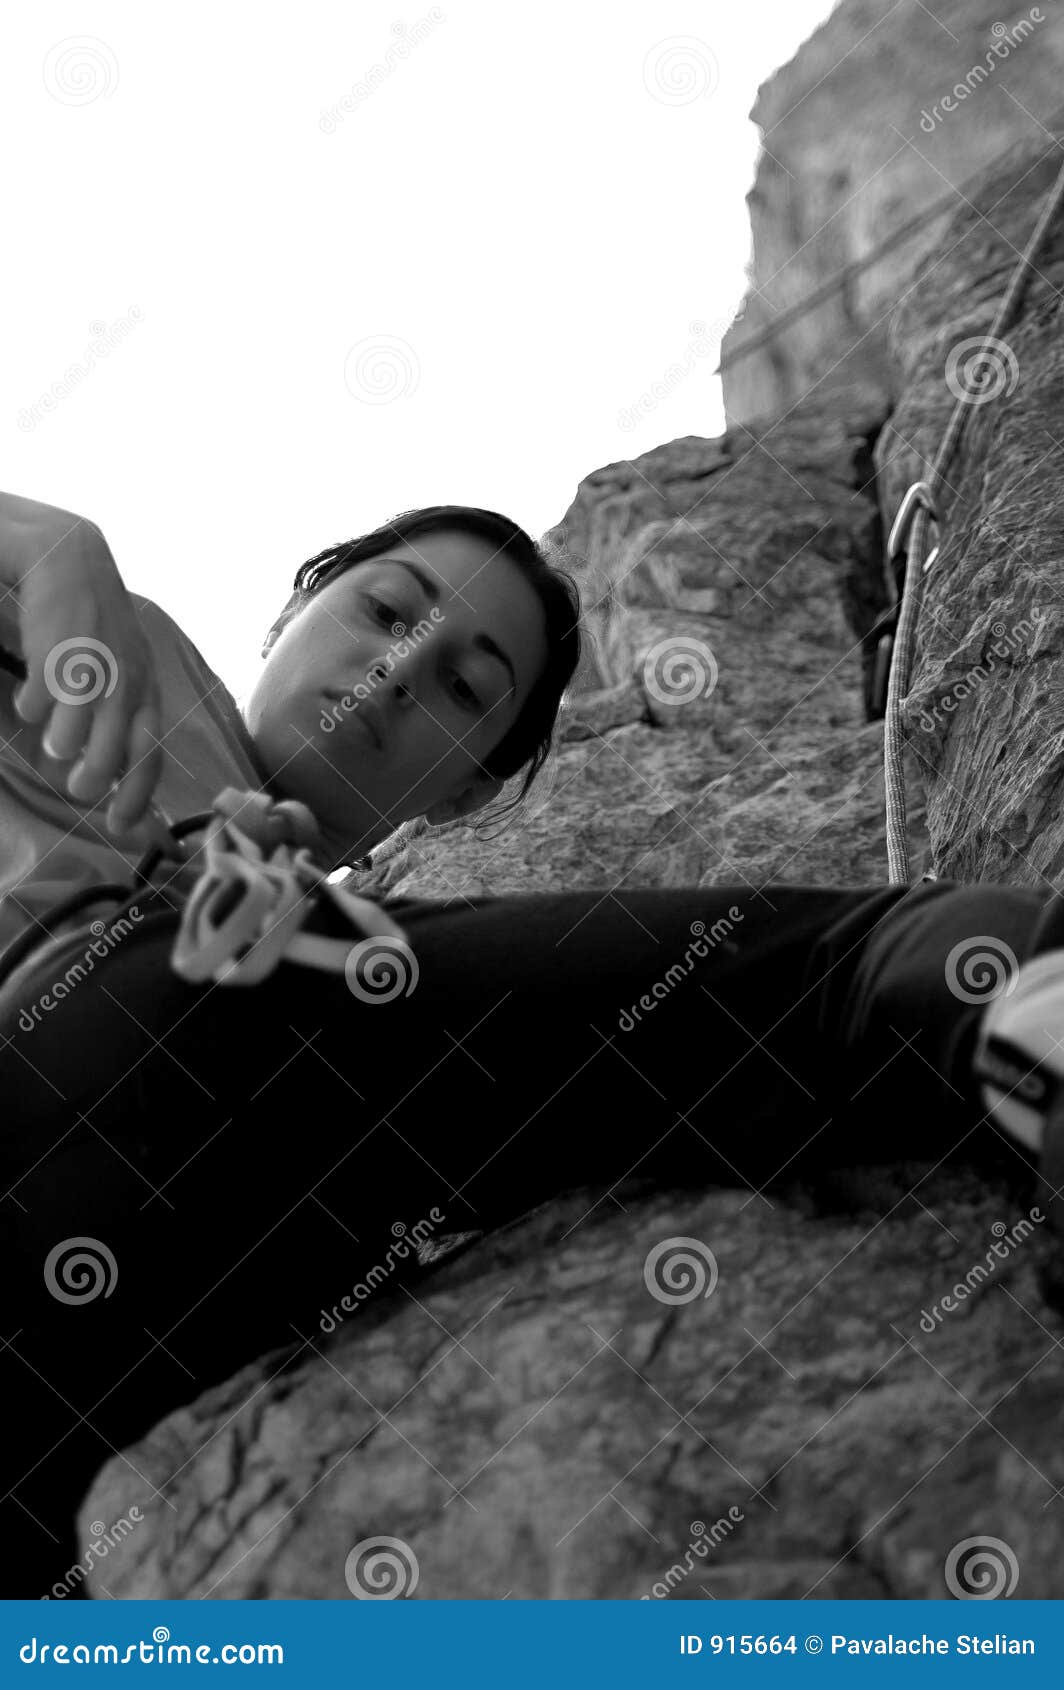 young woman climbing herculane